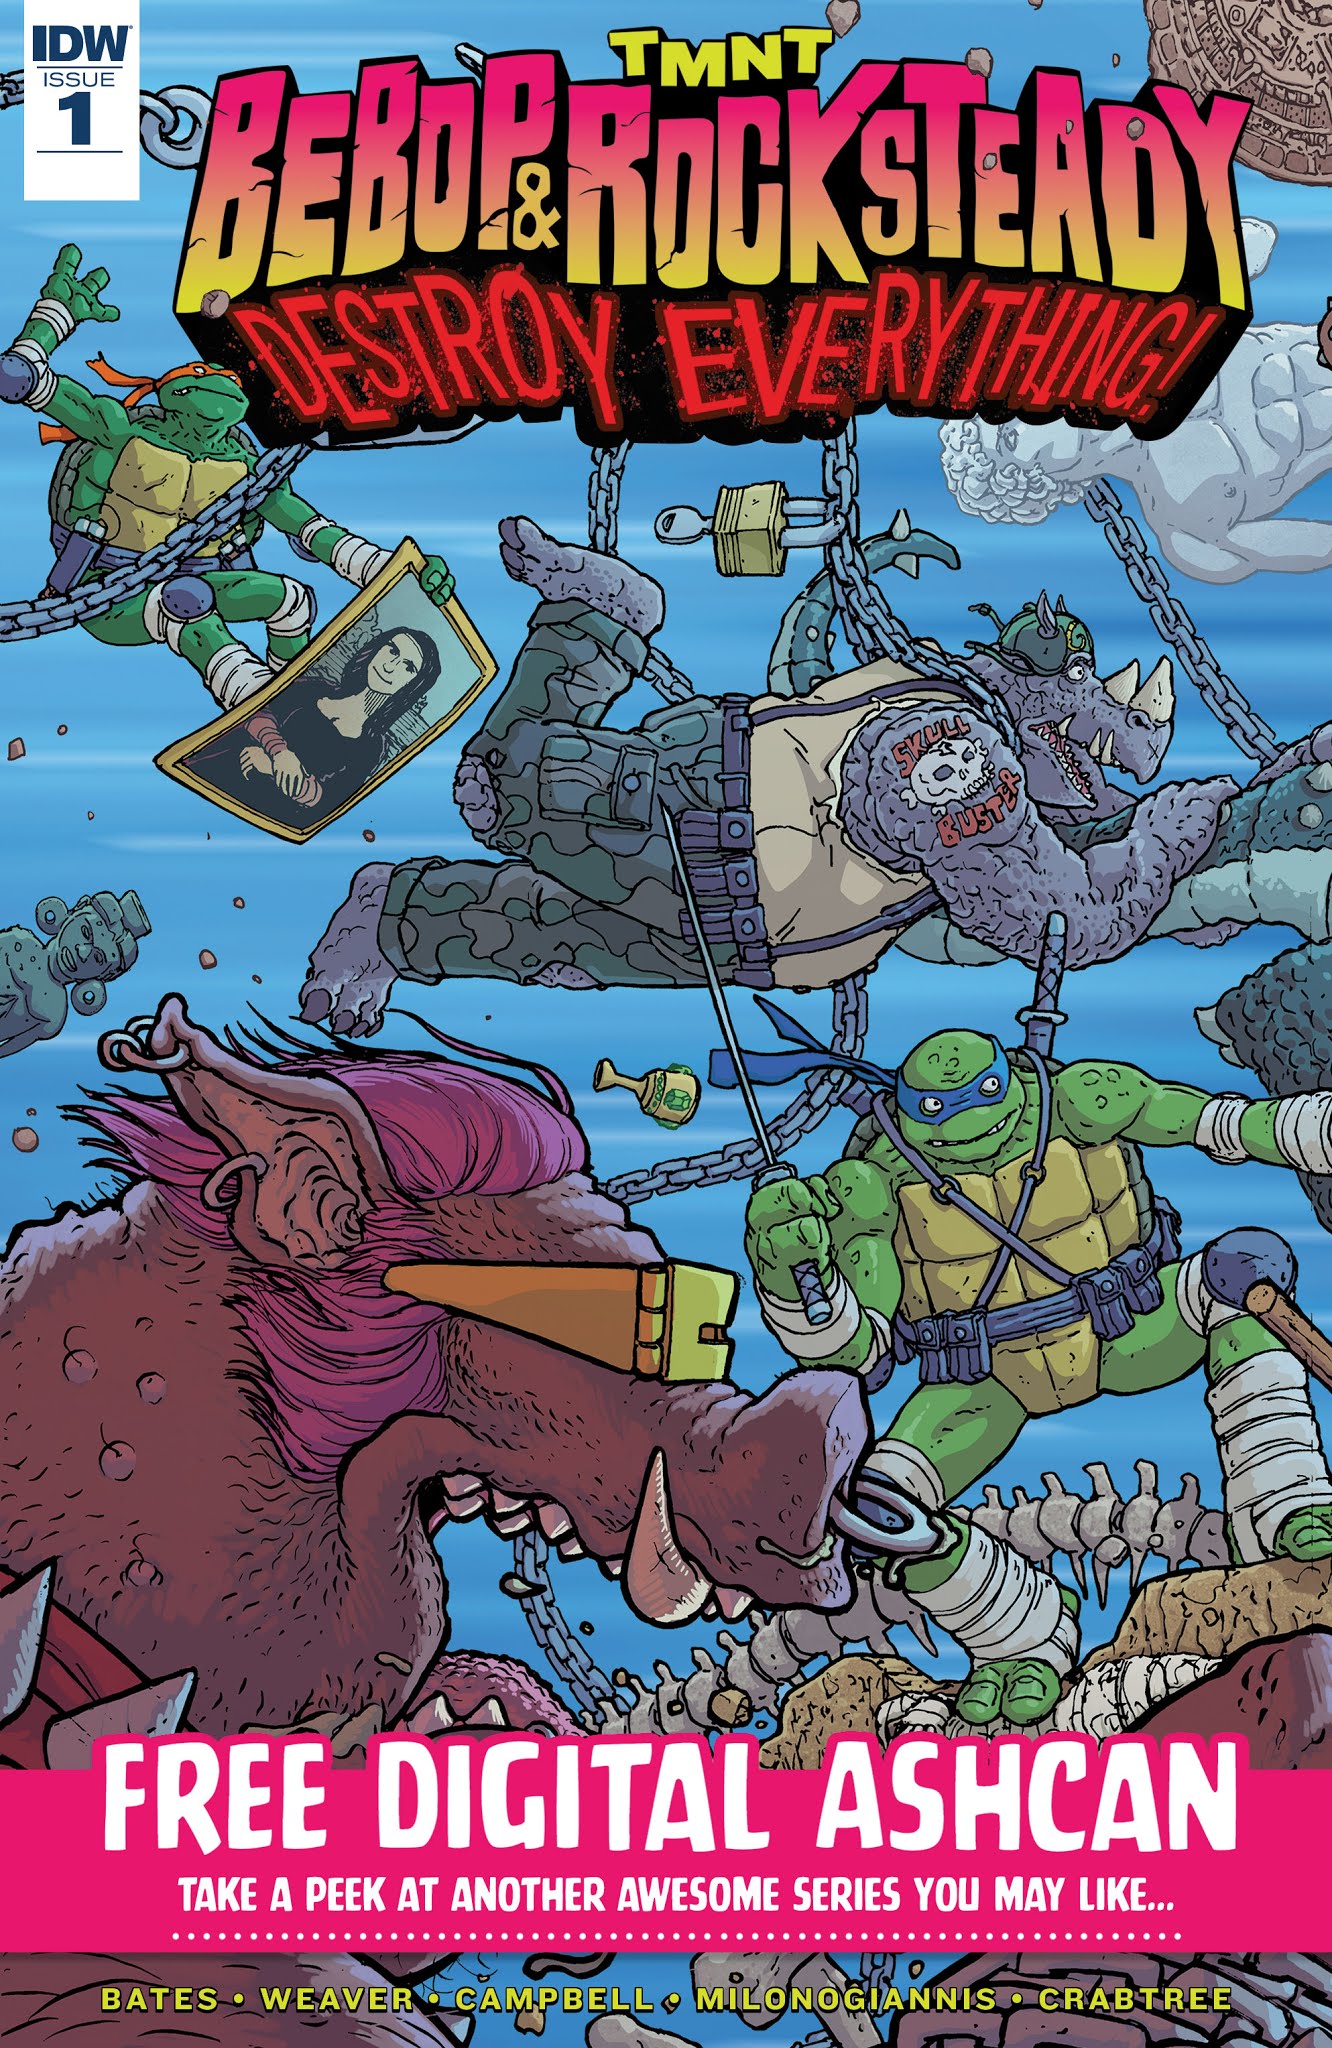 Read online Teenage Mutant Ninja Turtles: Urban Legends comic -  Issue #4 - 22